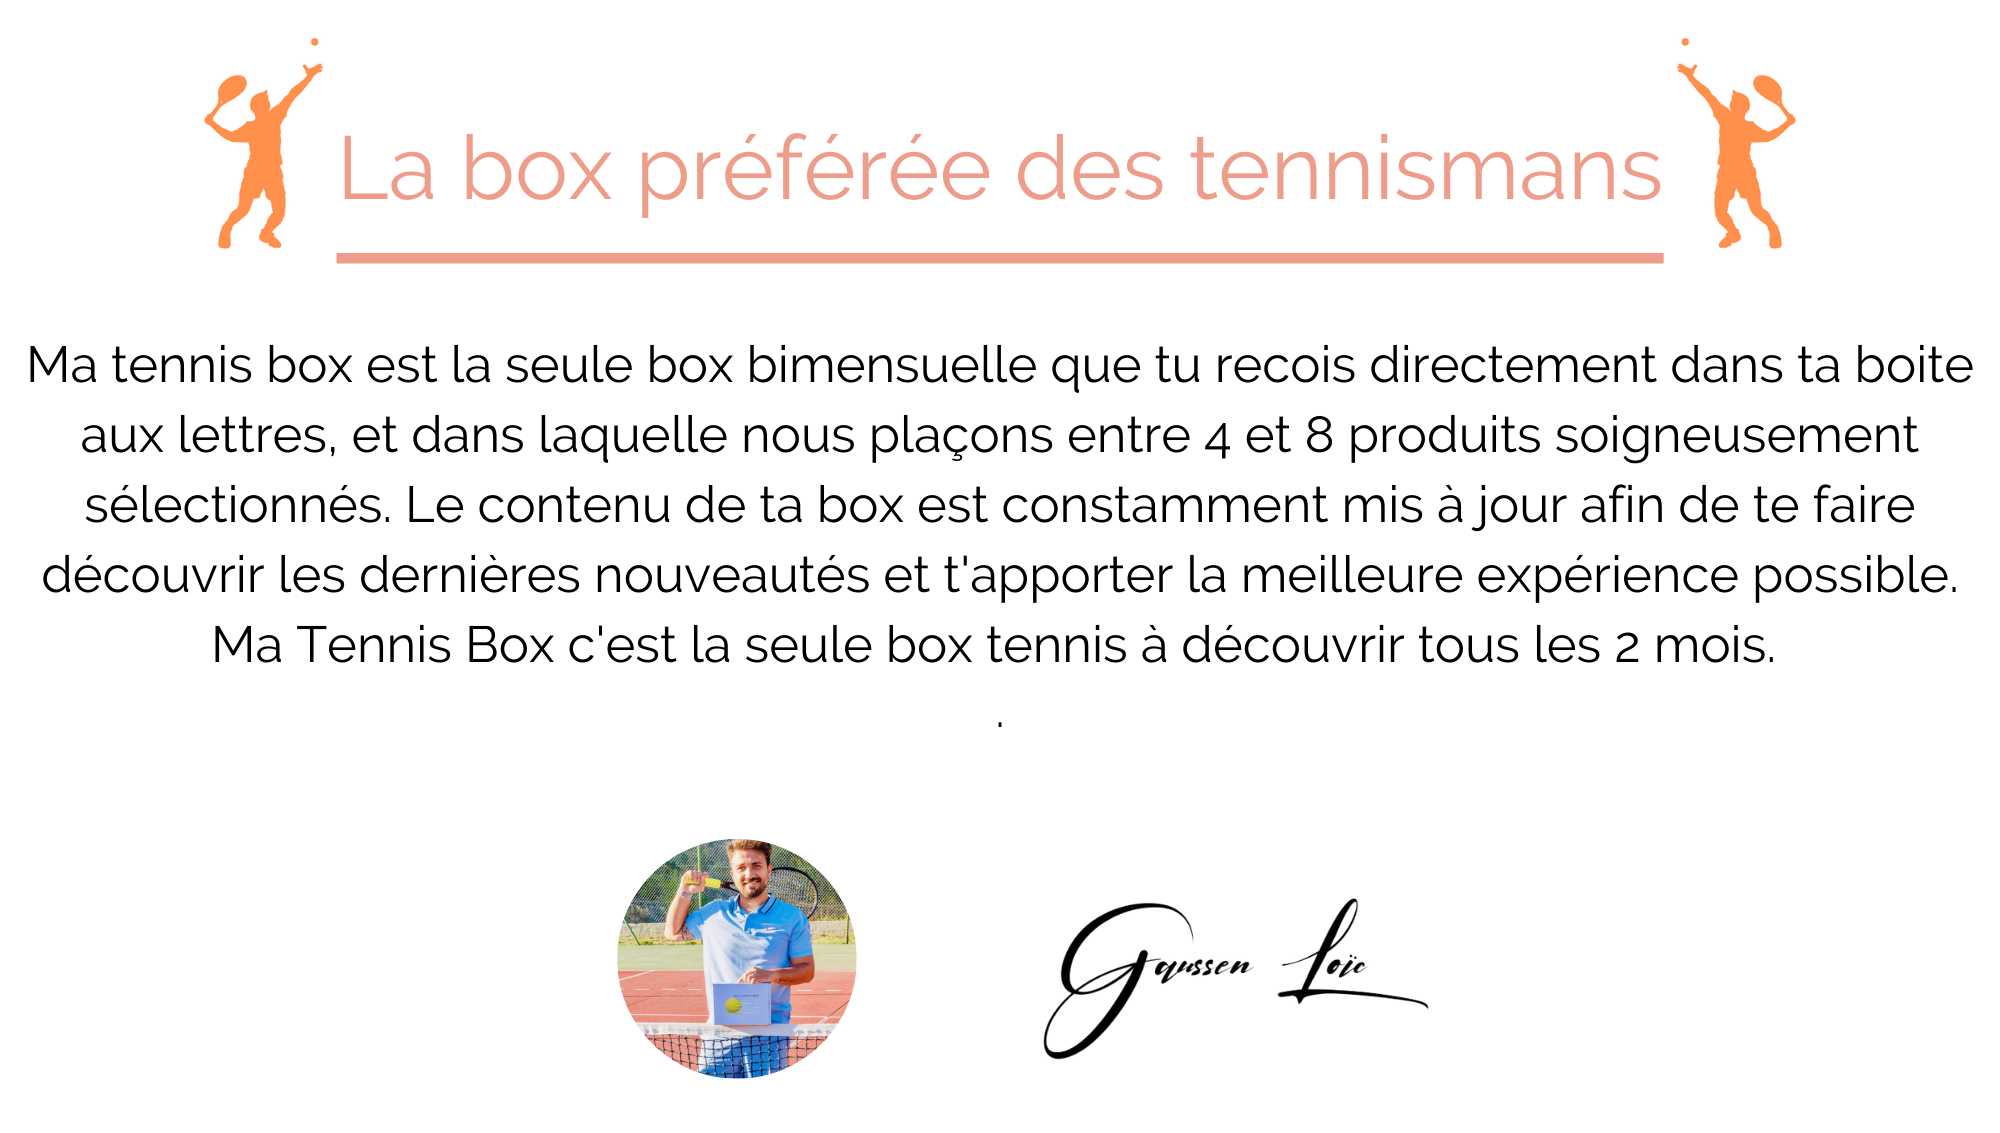 016200011333045-la-box-preferee-des-tennismans-6.png